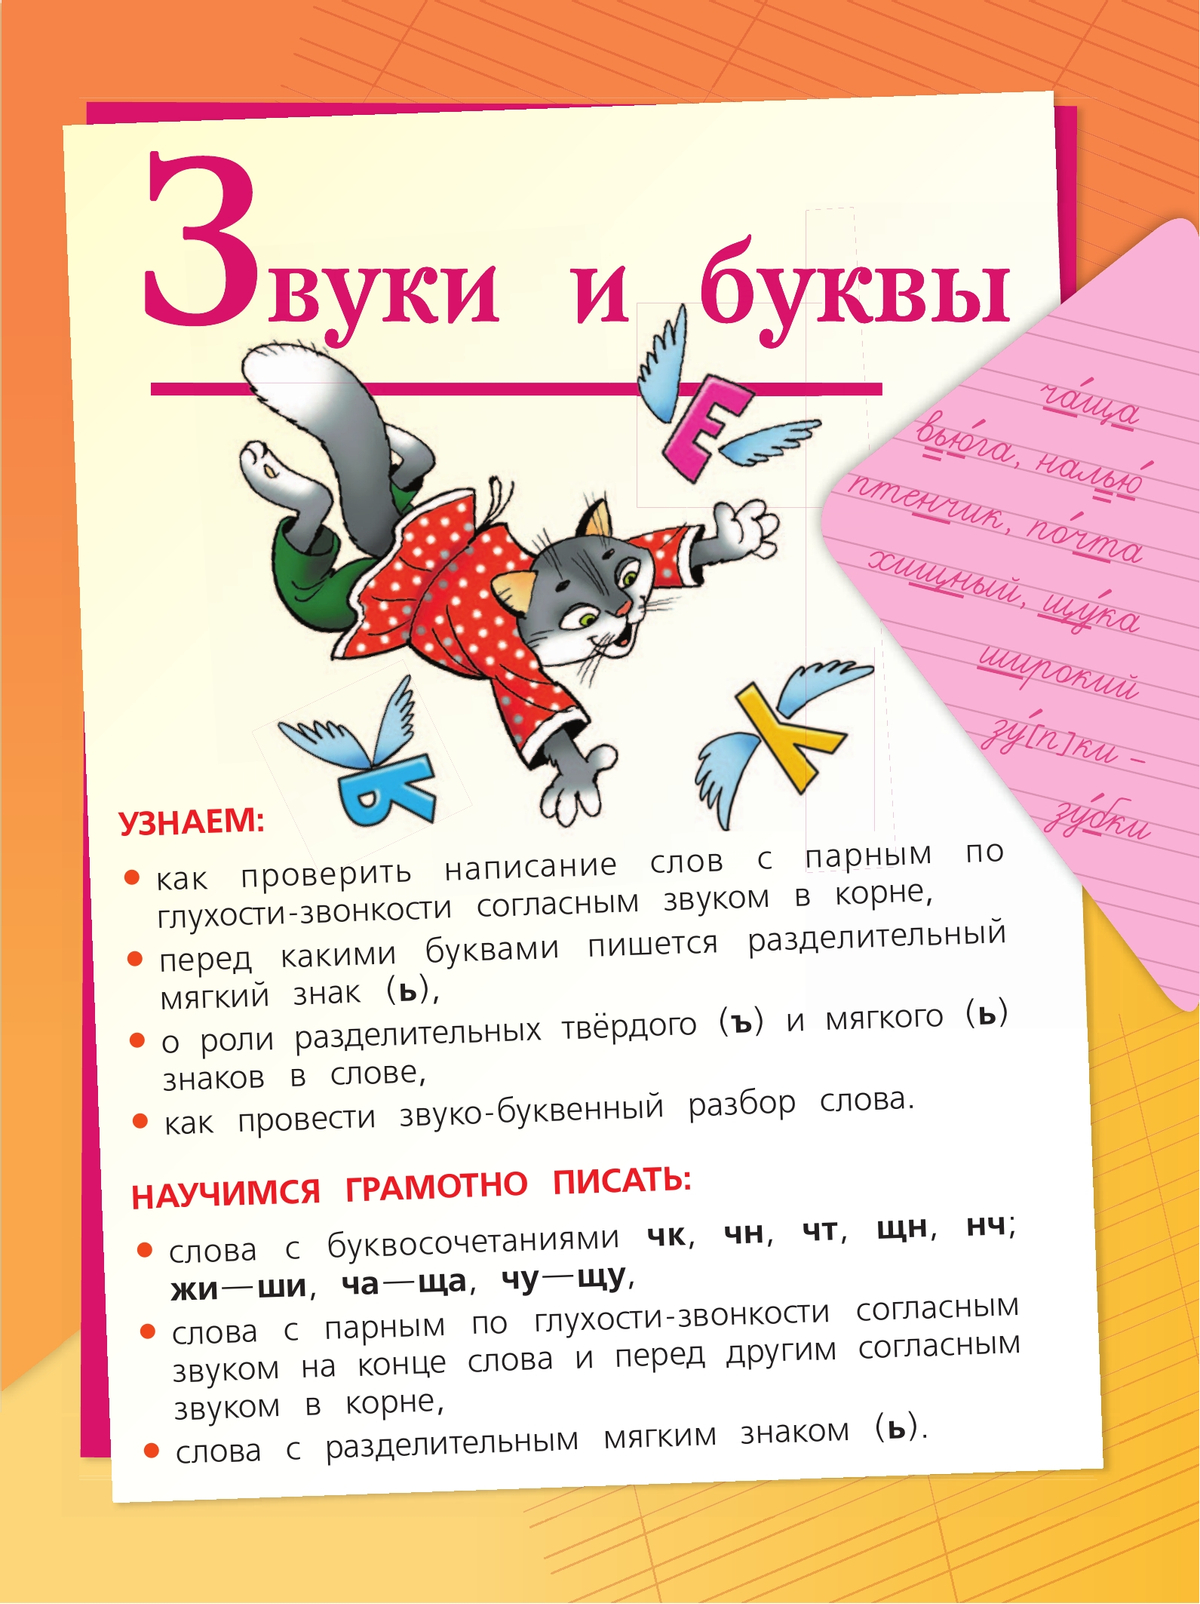 Русский язык. 2 класс. Учебник. В 2 ч. Часть 2 11